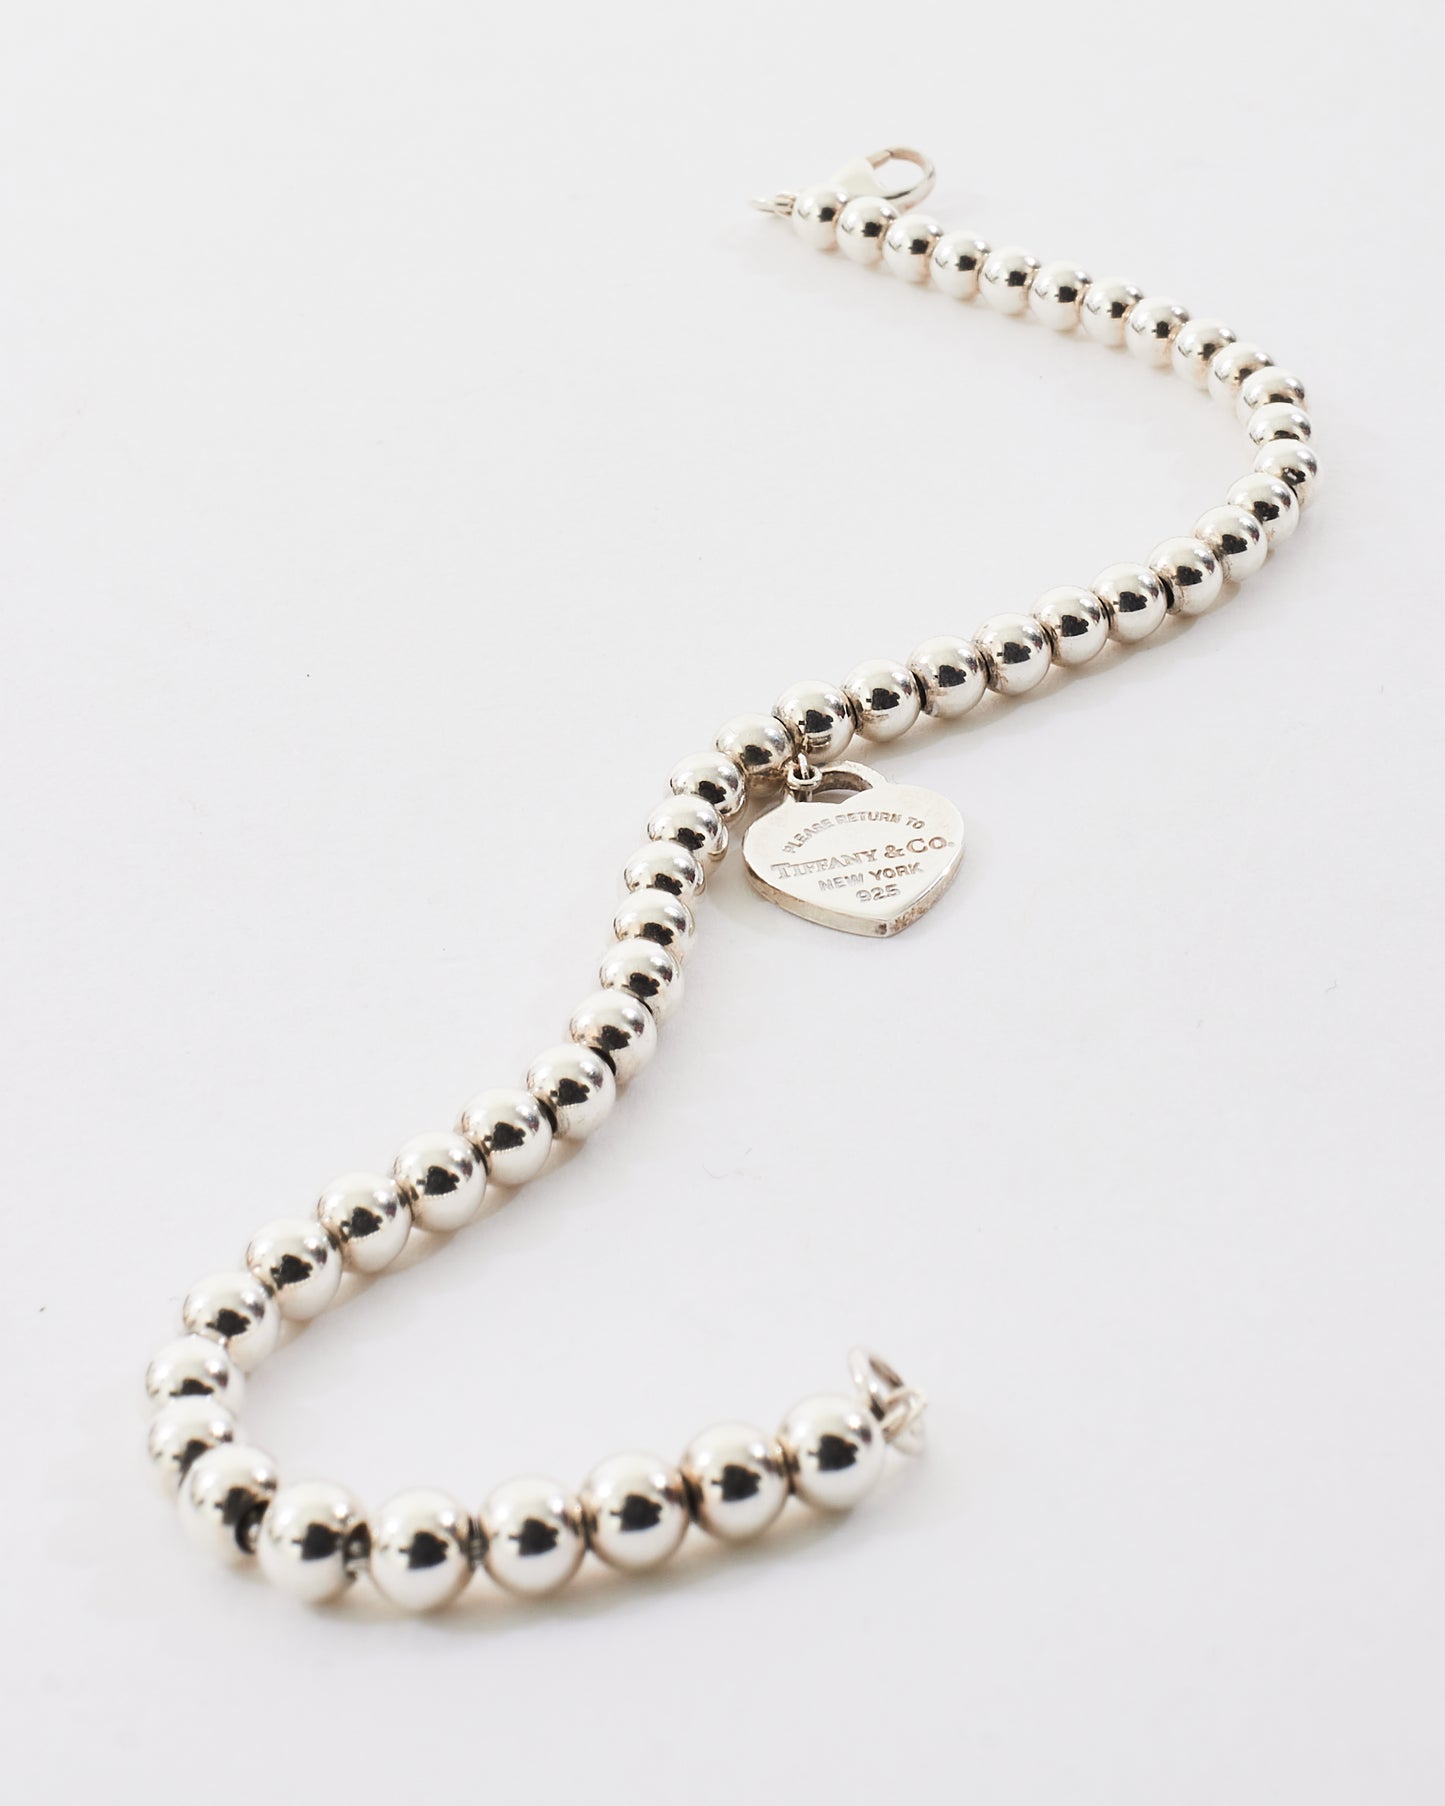 Tiffany & Co. Sterling Silver Heart Charm Beaded Bracelet